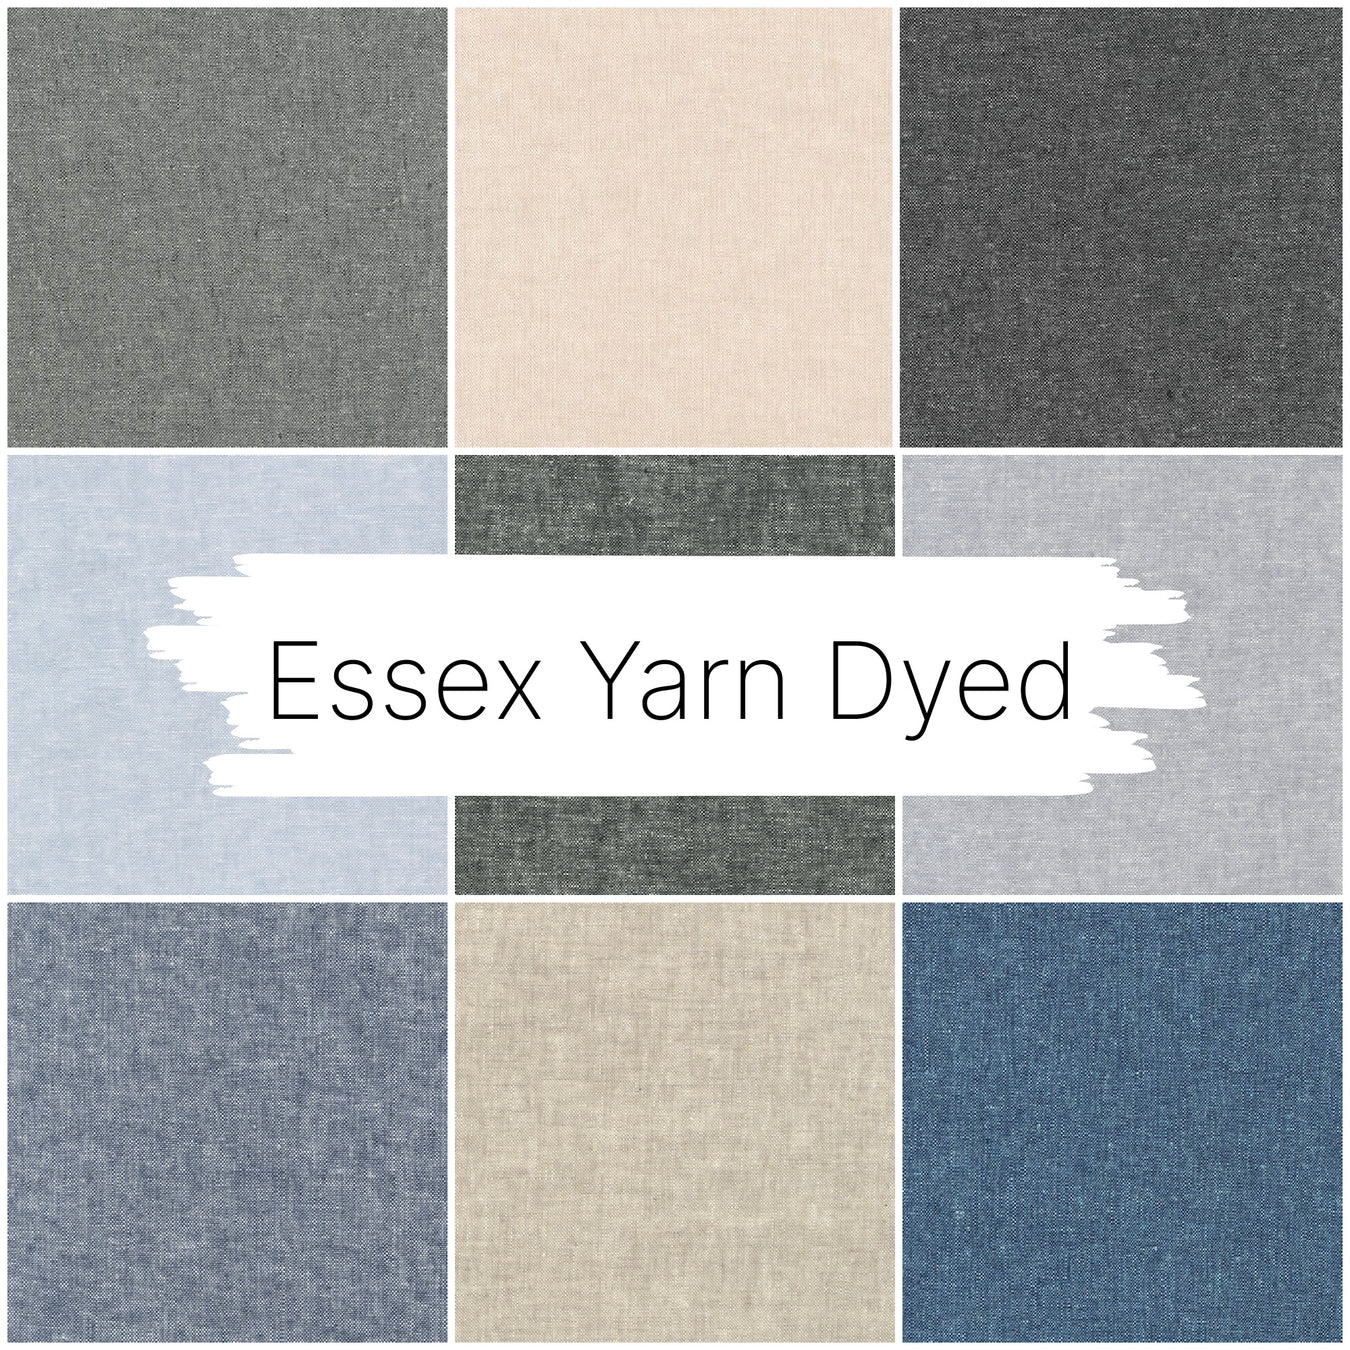 Essex Yarn Dyed